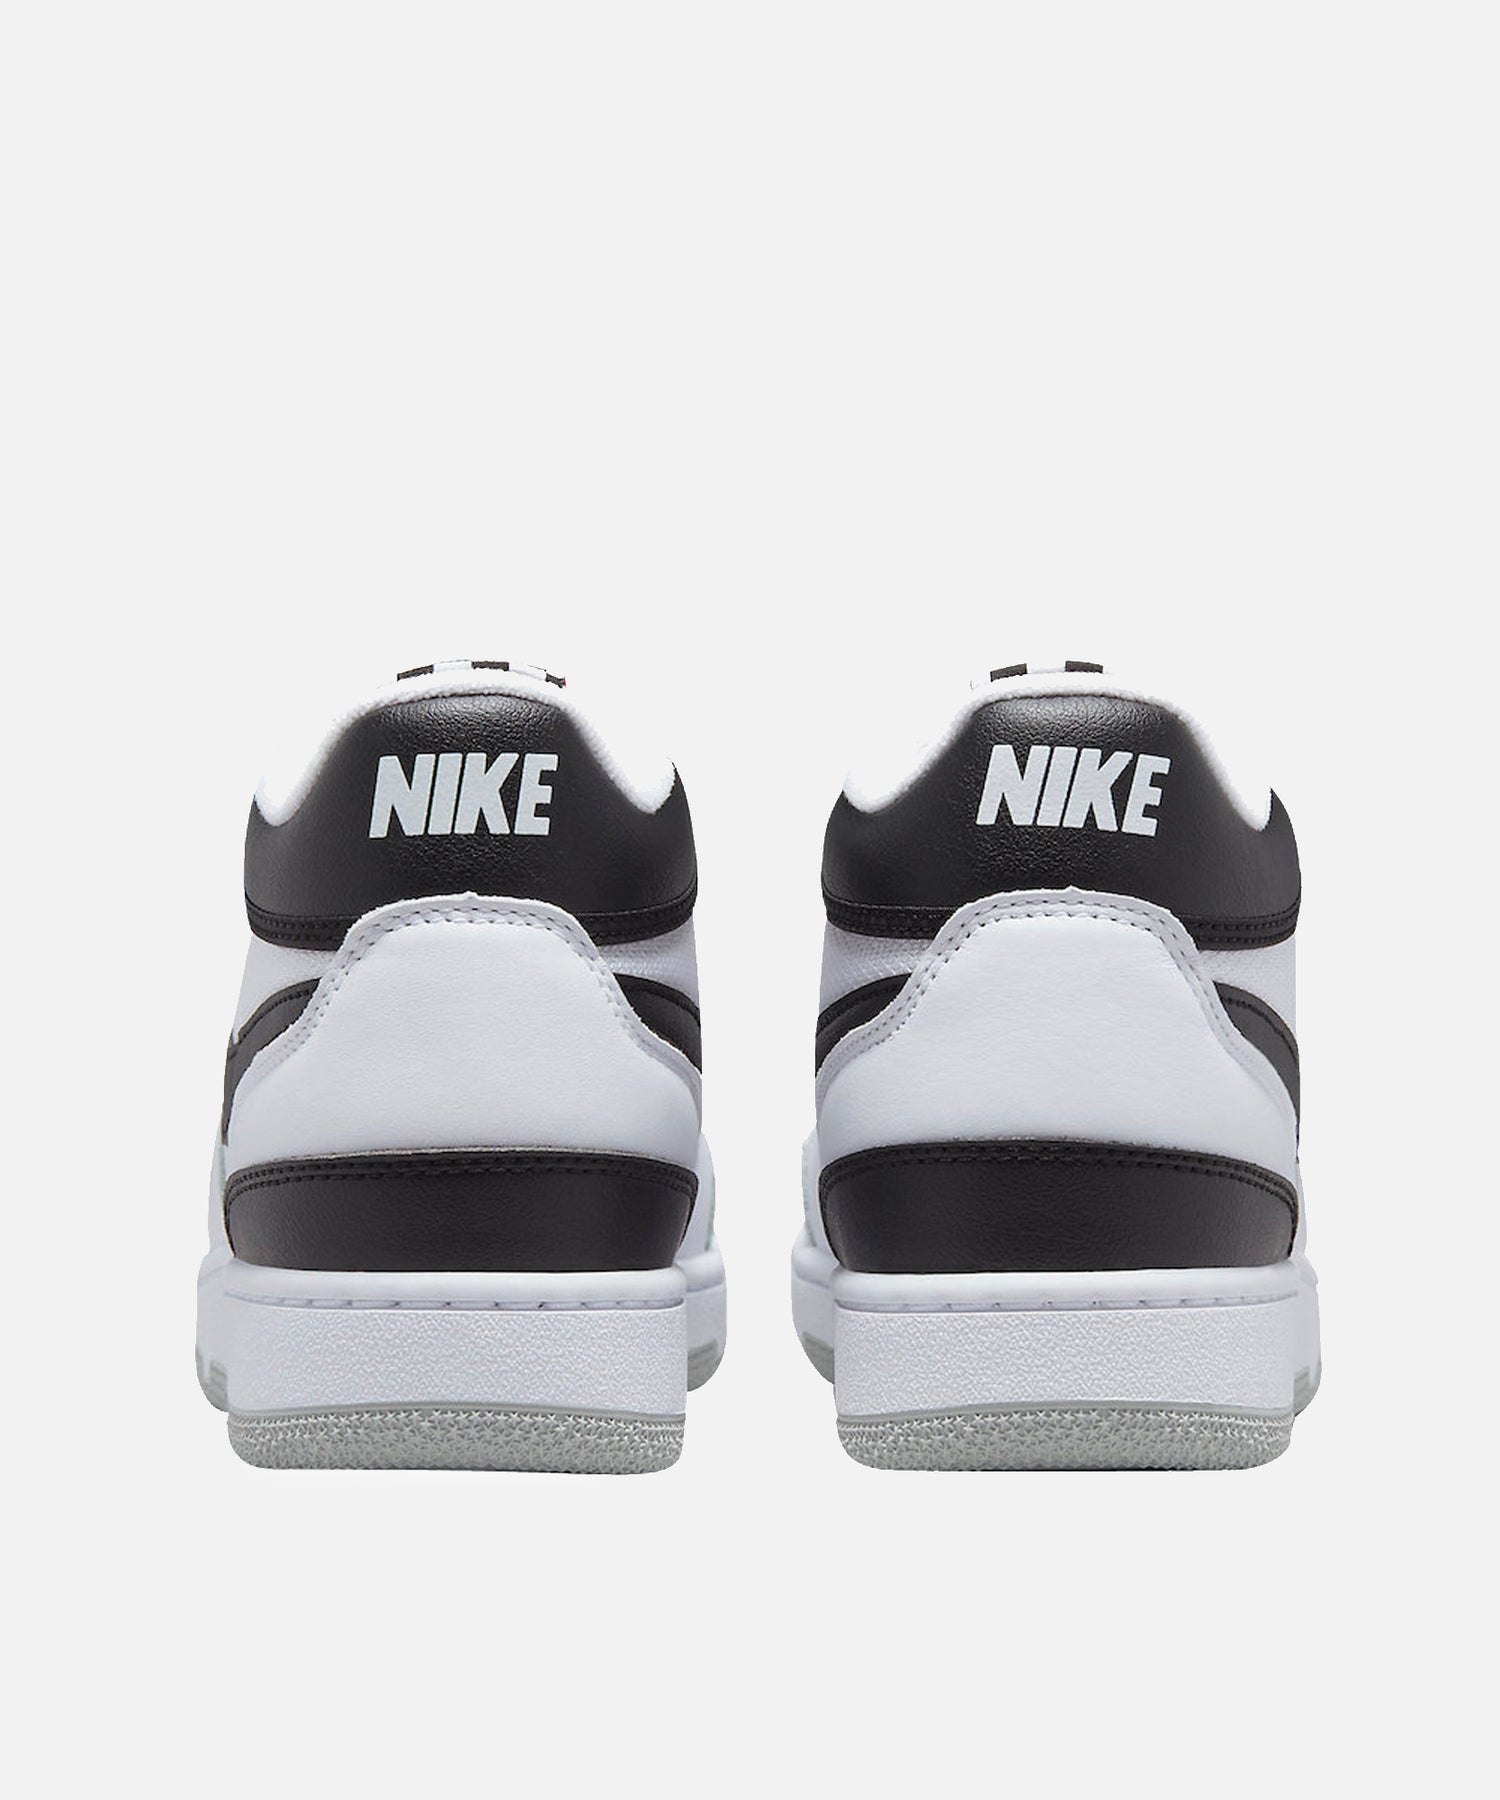 Nike Attack QS SP (White/Black-White)